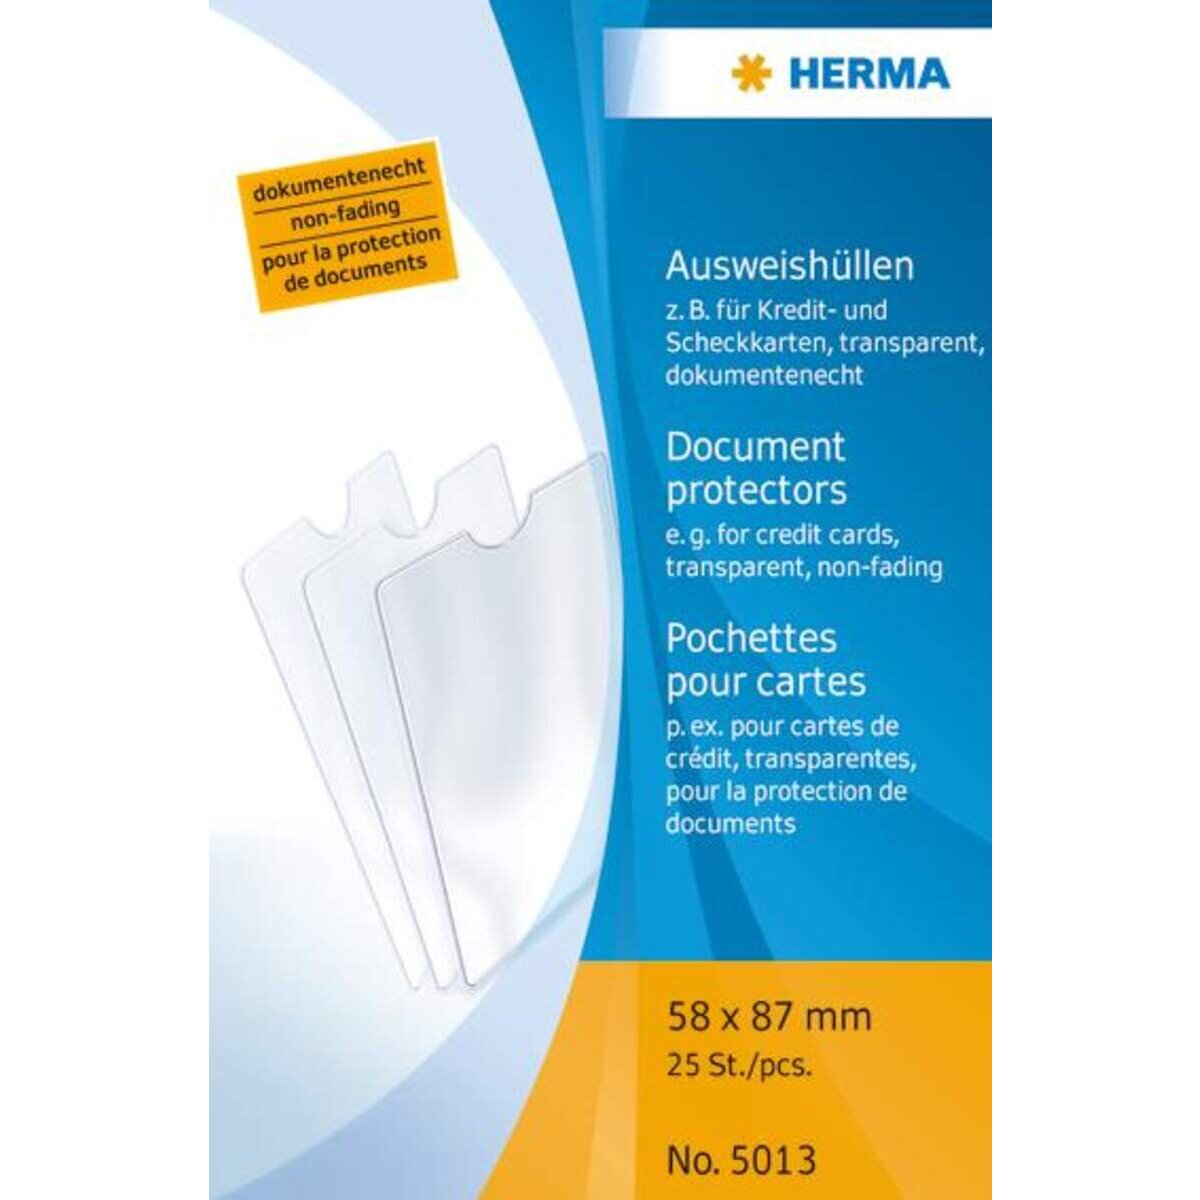 HERMA Ausweishüllen für Kredit-/Scheckkarte, 58 x 87mm, 1 Stück